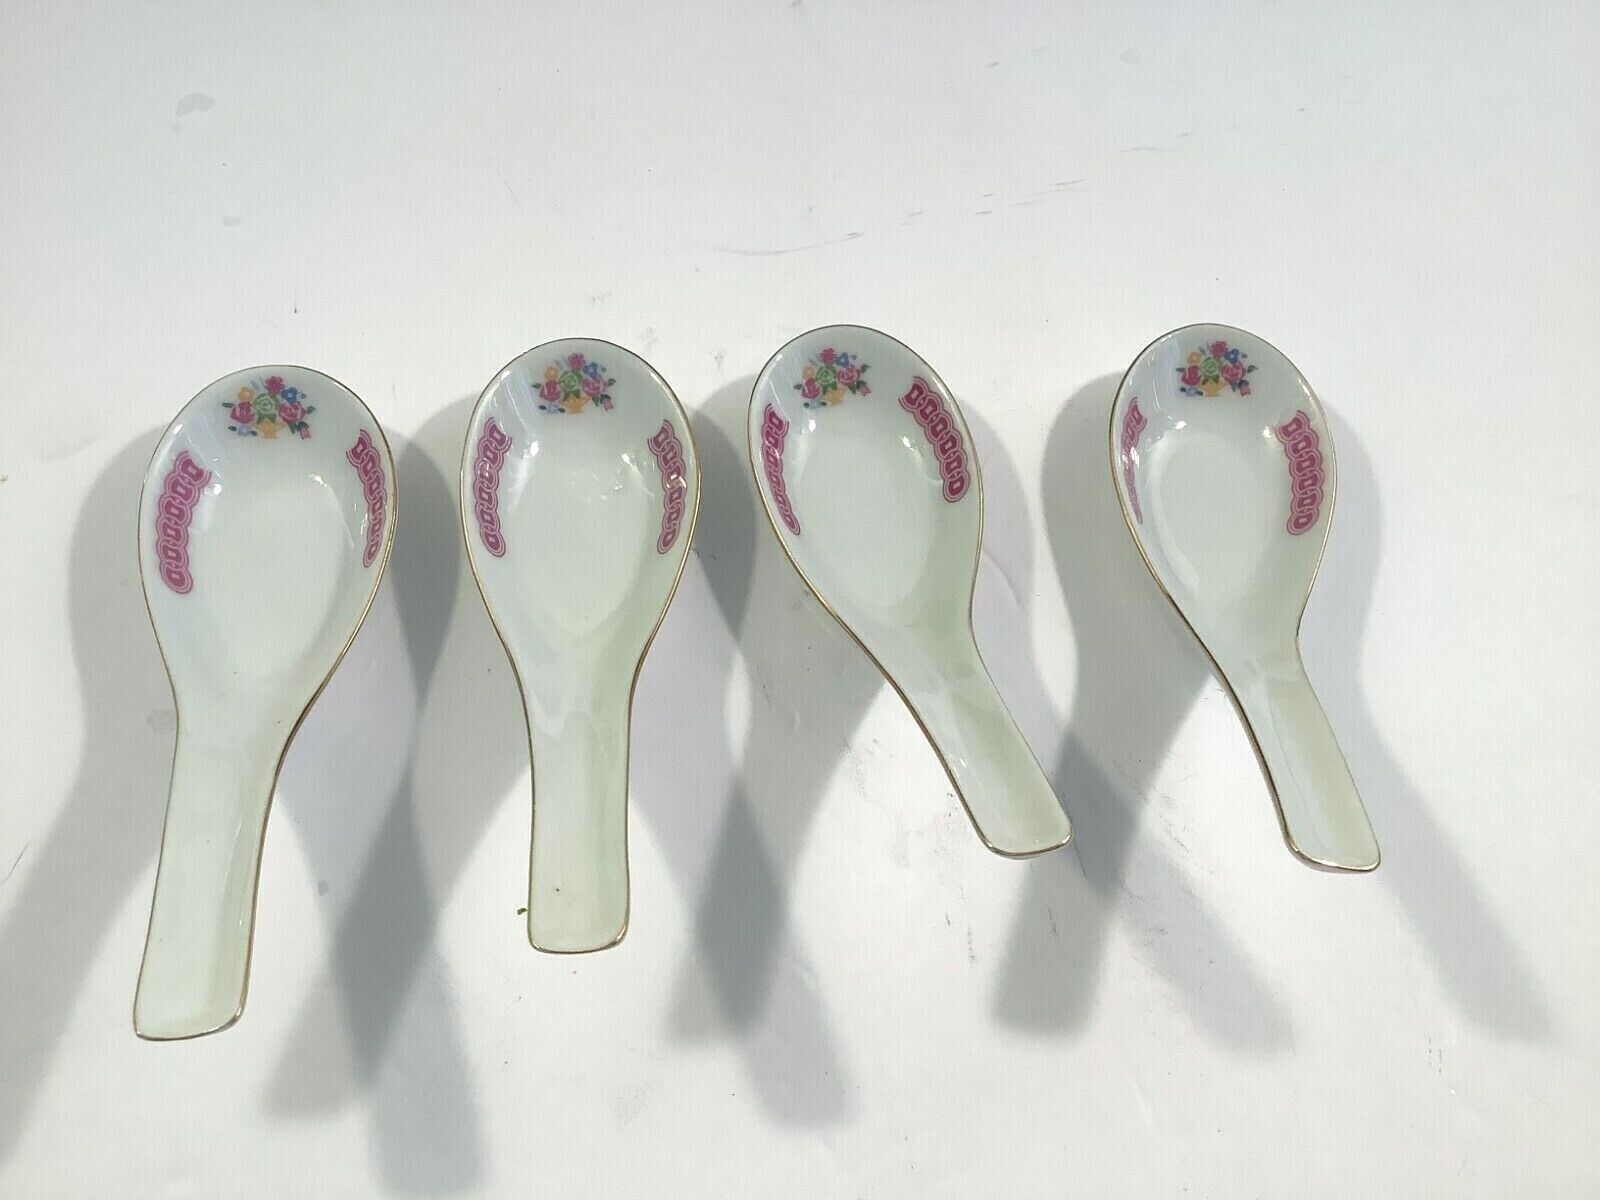 Set of 4 Porcelain Wonton Ramen Noodle Soup Spoons Asian Style Pink Floral